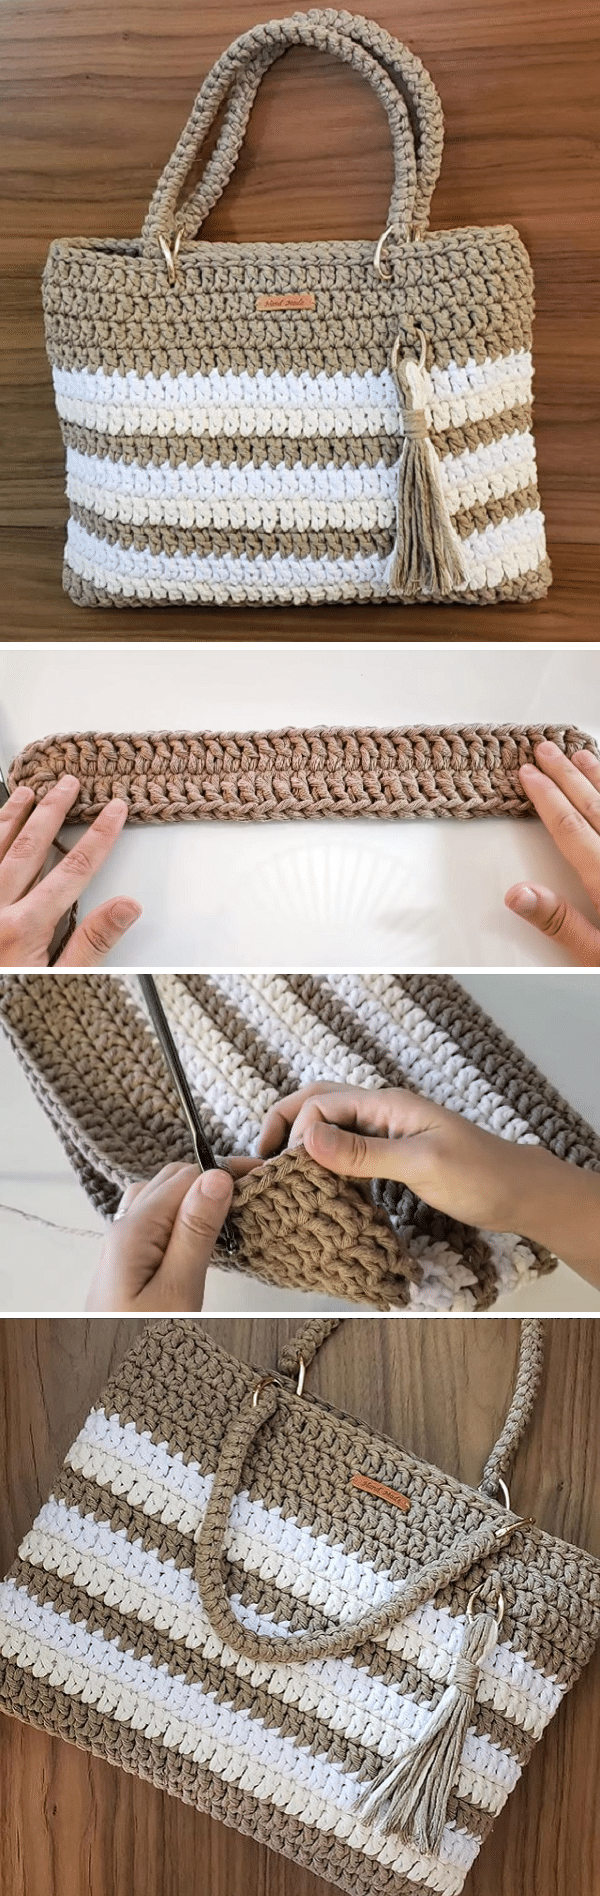 Crochet Bag With String Thread - Crochet Kingdom